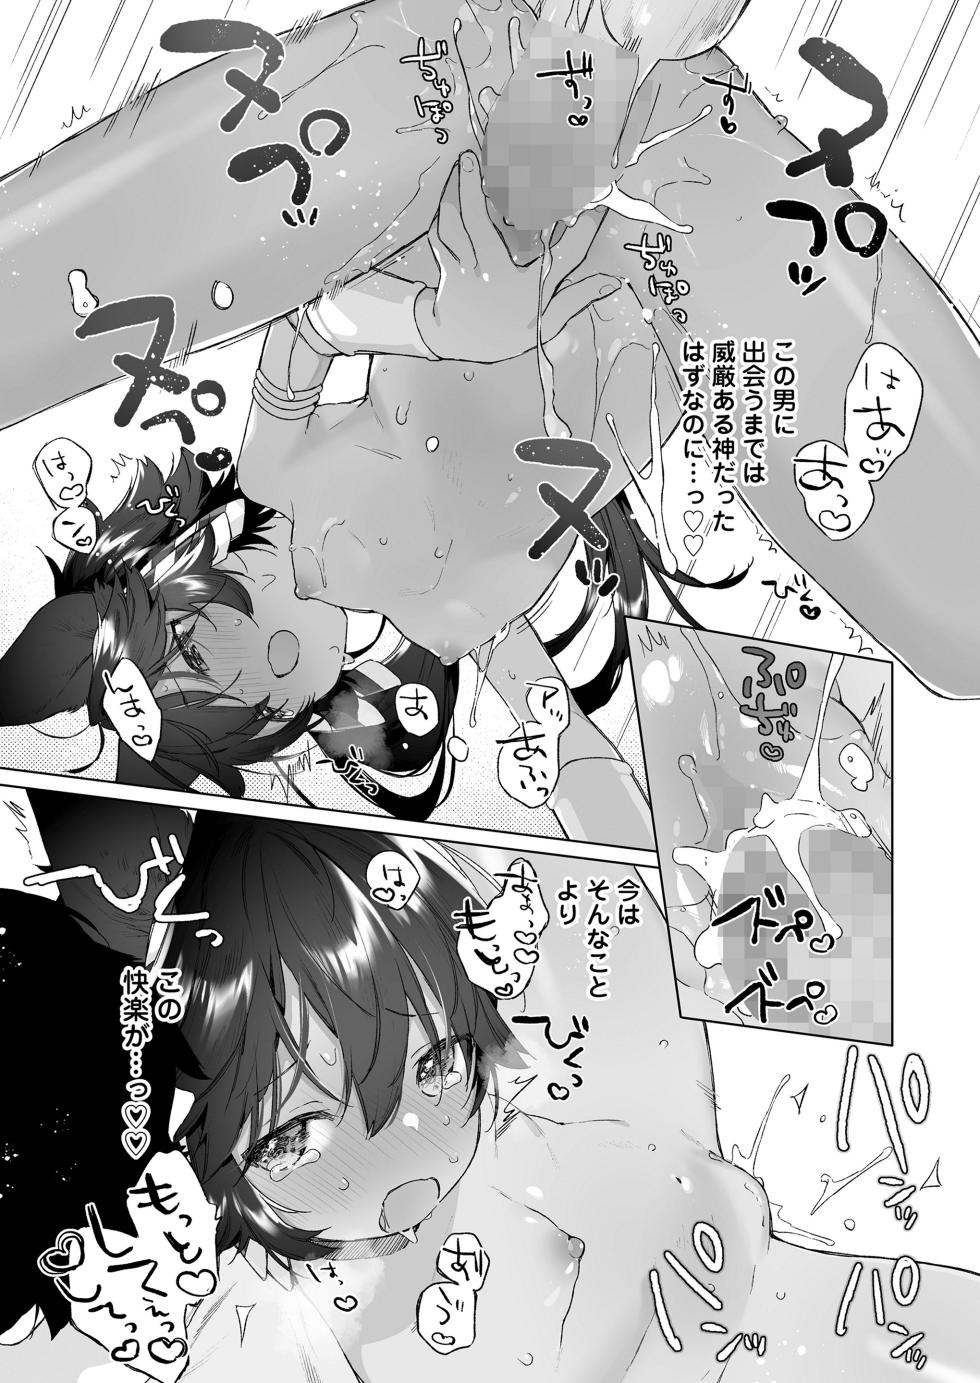 Towako 15 [Digital] - Page 23